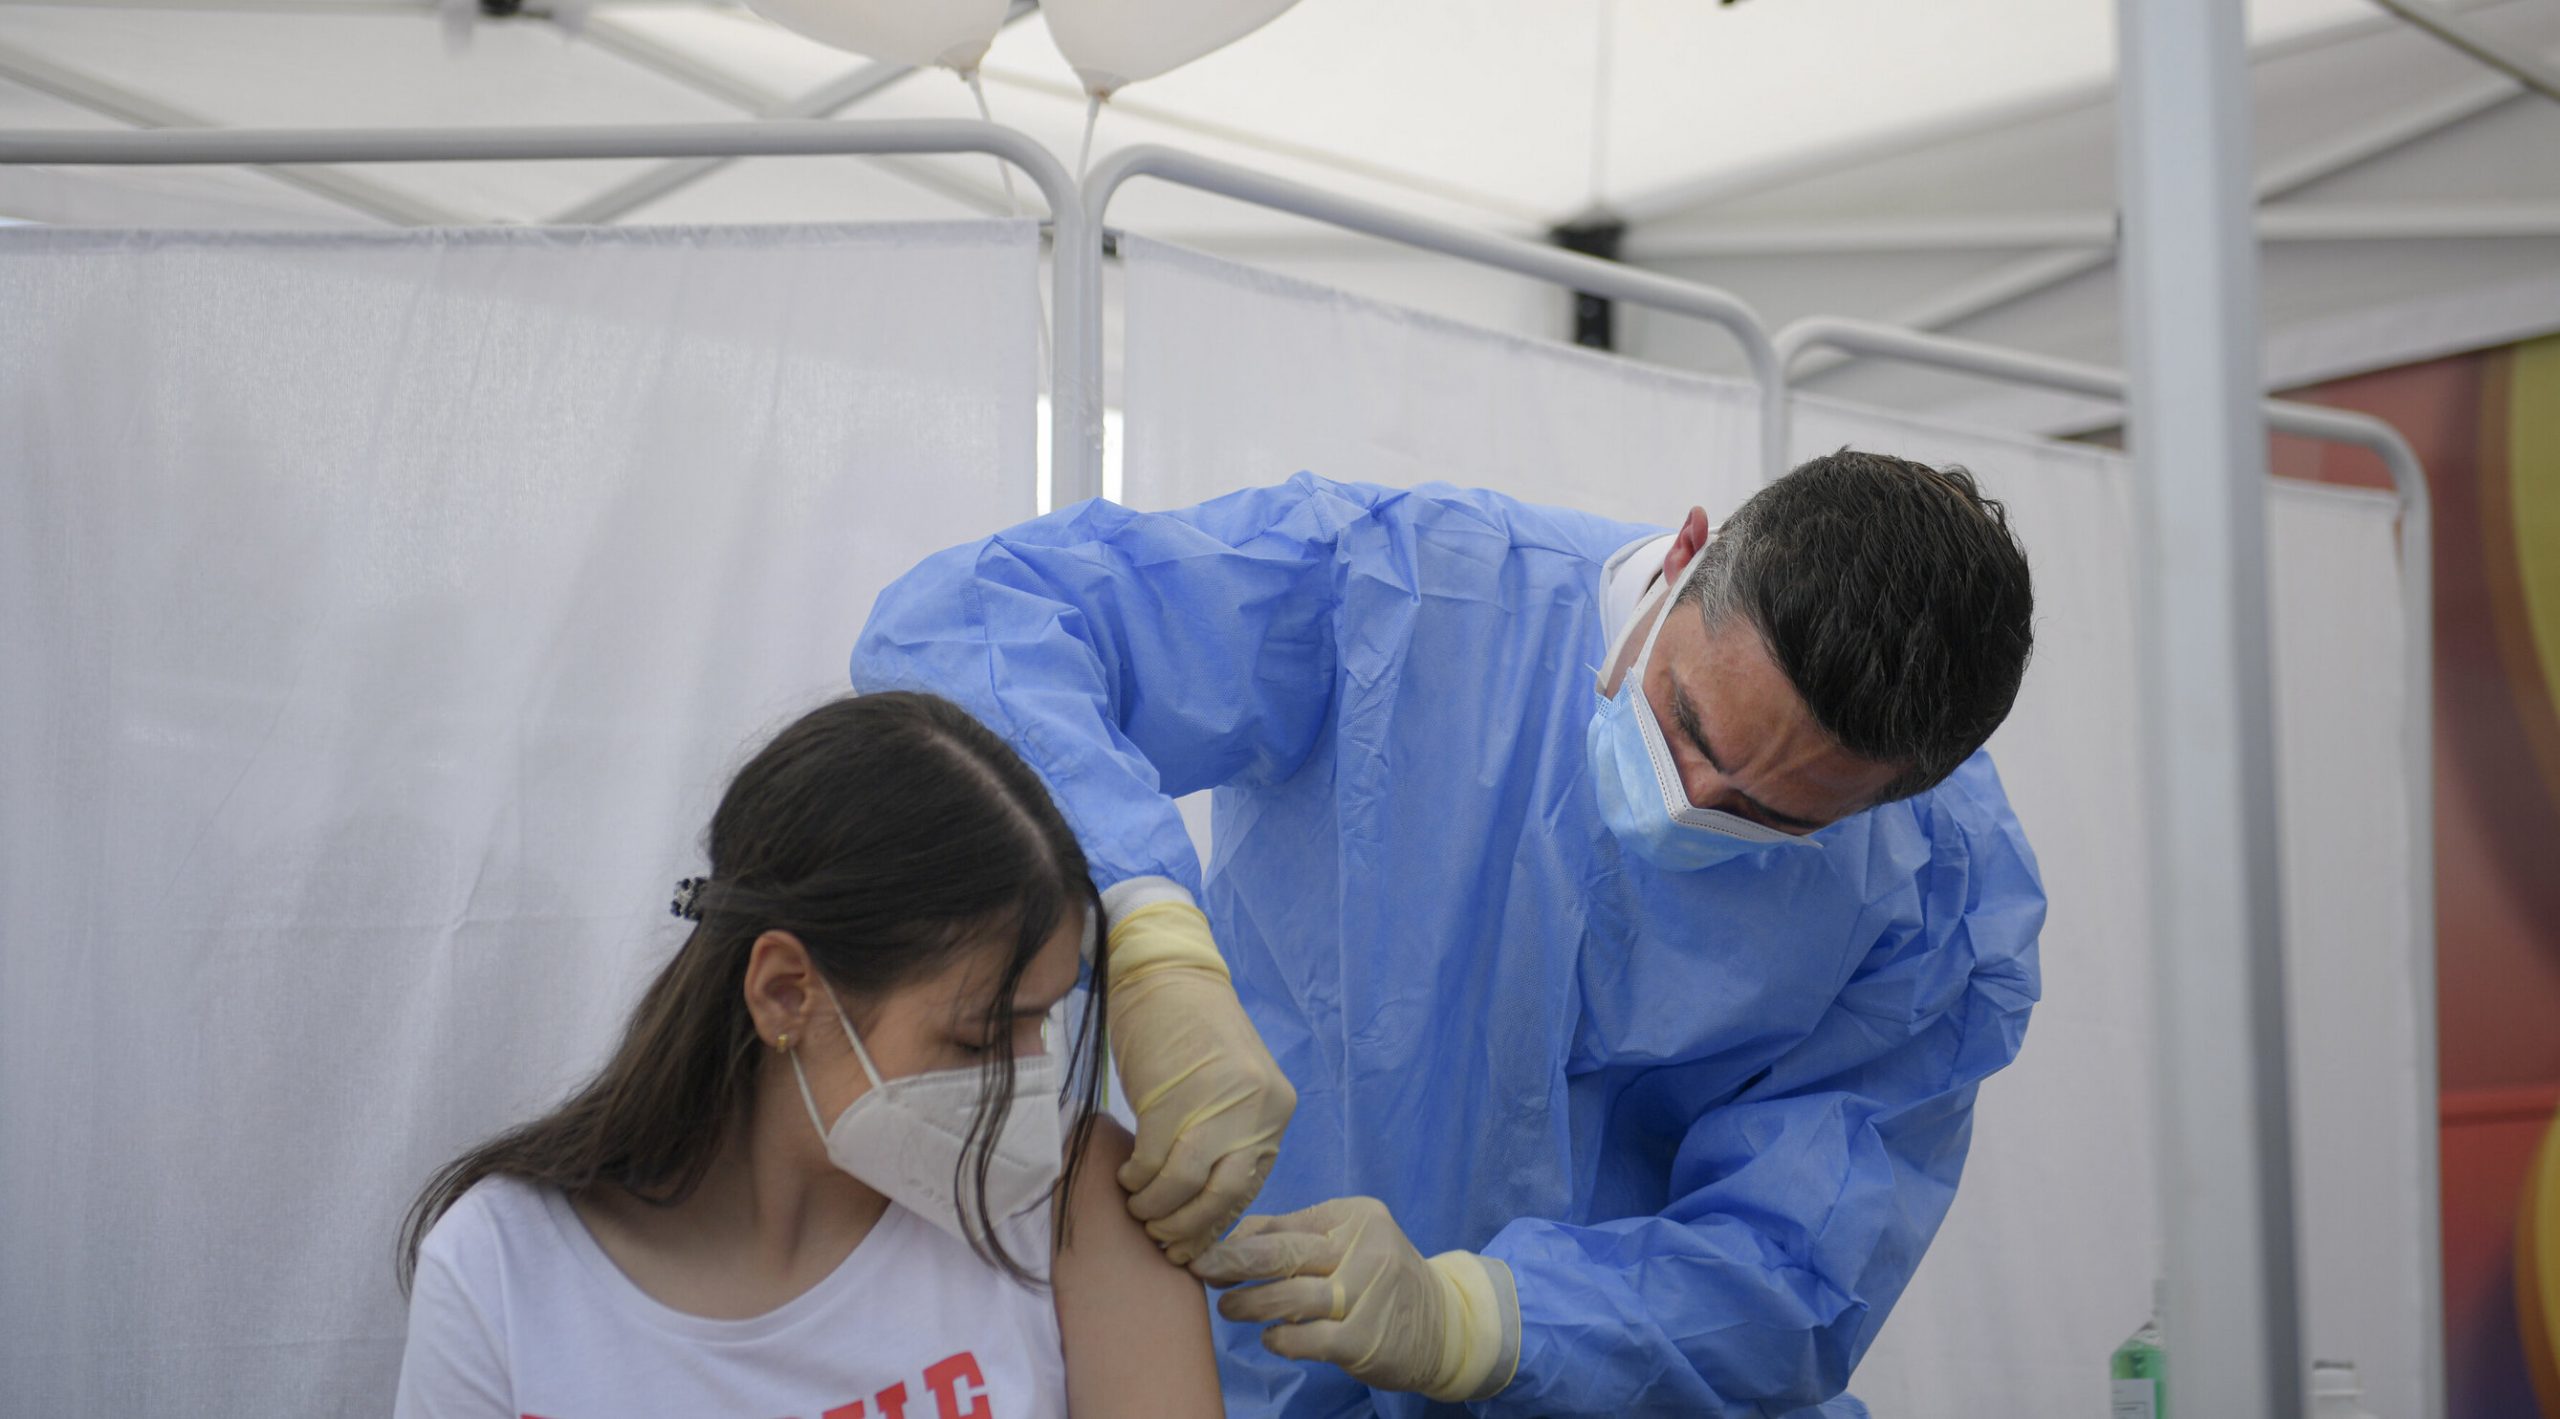 România este prima țară din Europa care vaccinează copiii împotriva Covid, confirmă Valeriu Gheorghiță